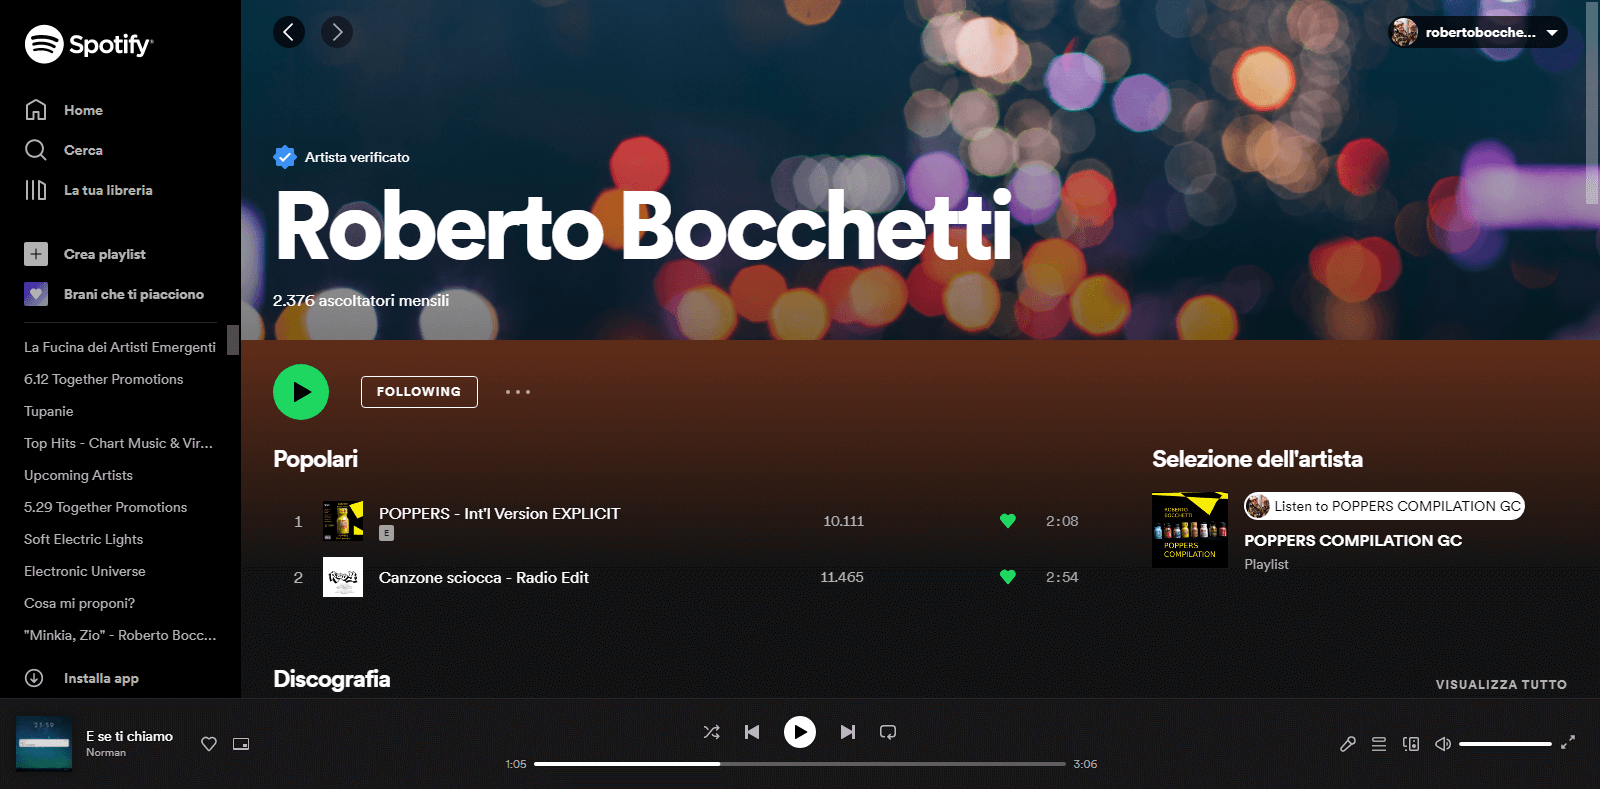 Il singolo "POPPERS" di Roberto Bocchetti ha superato i 10.000 ascolti su Spotify